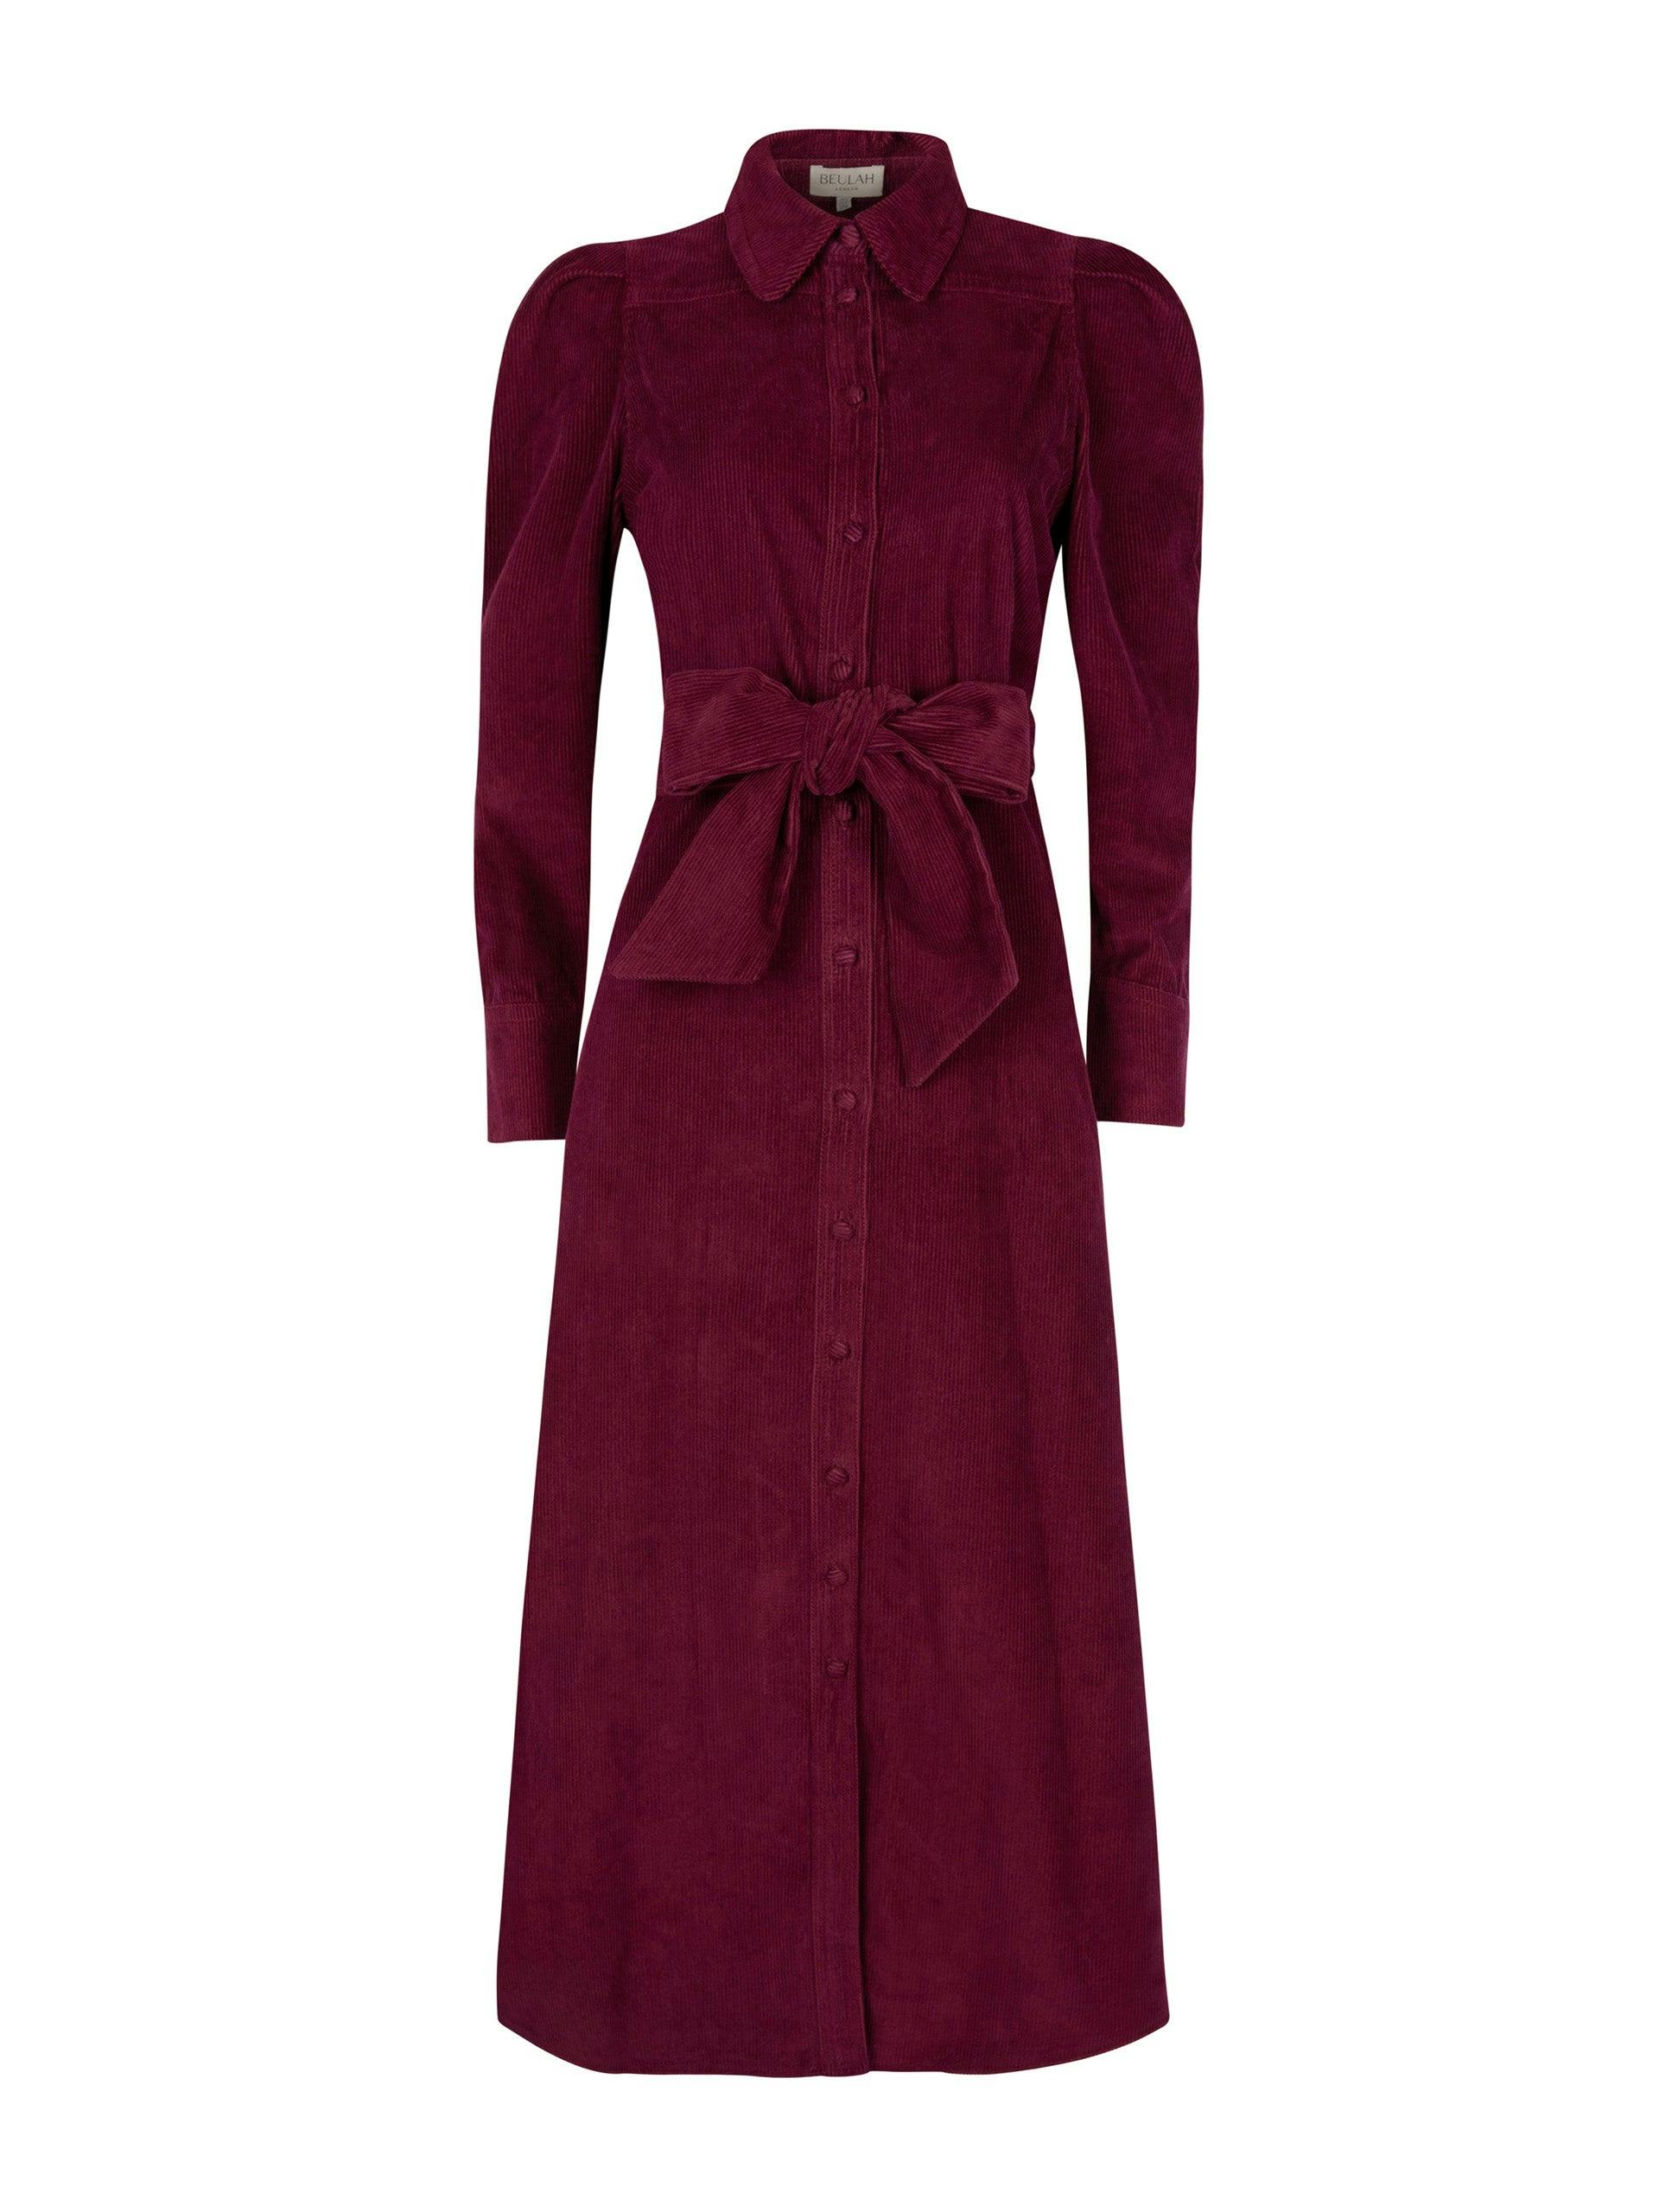 Valerie burgundy dress